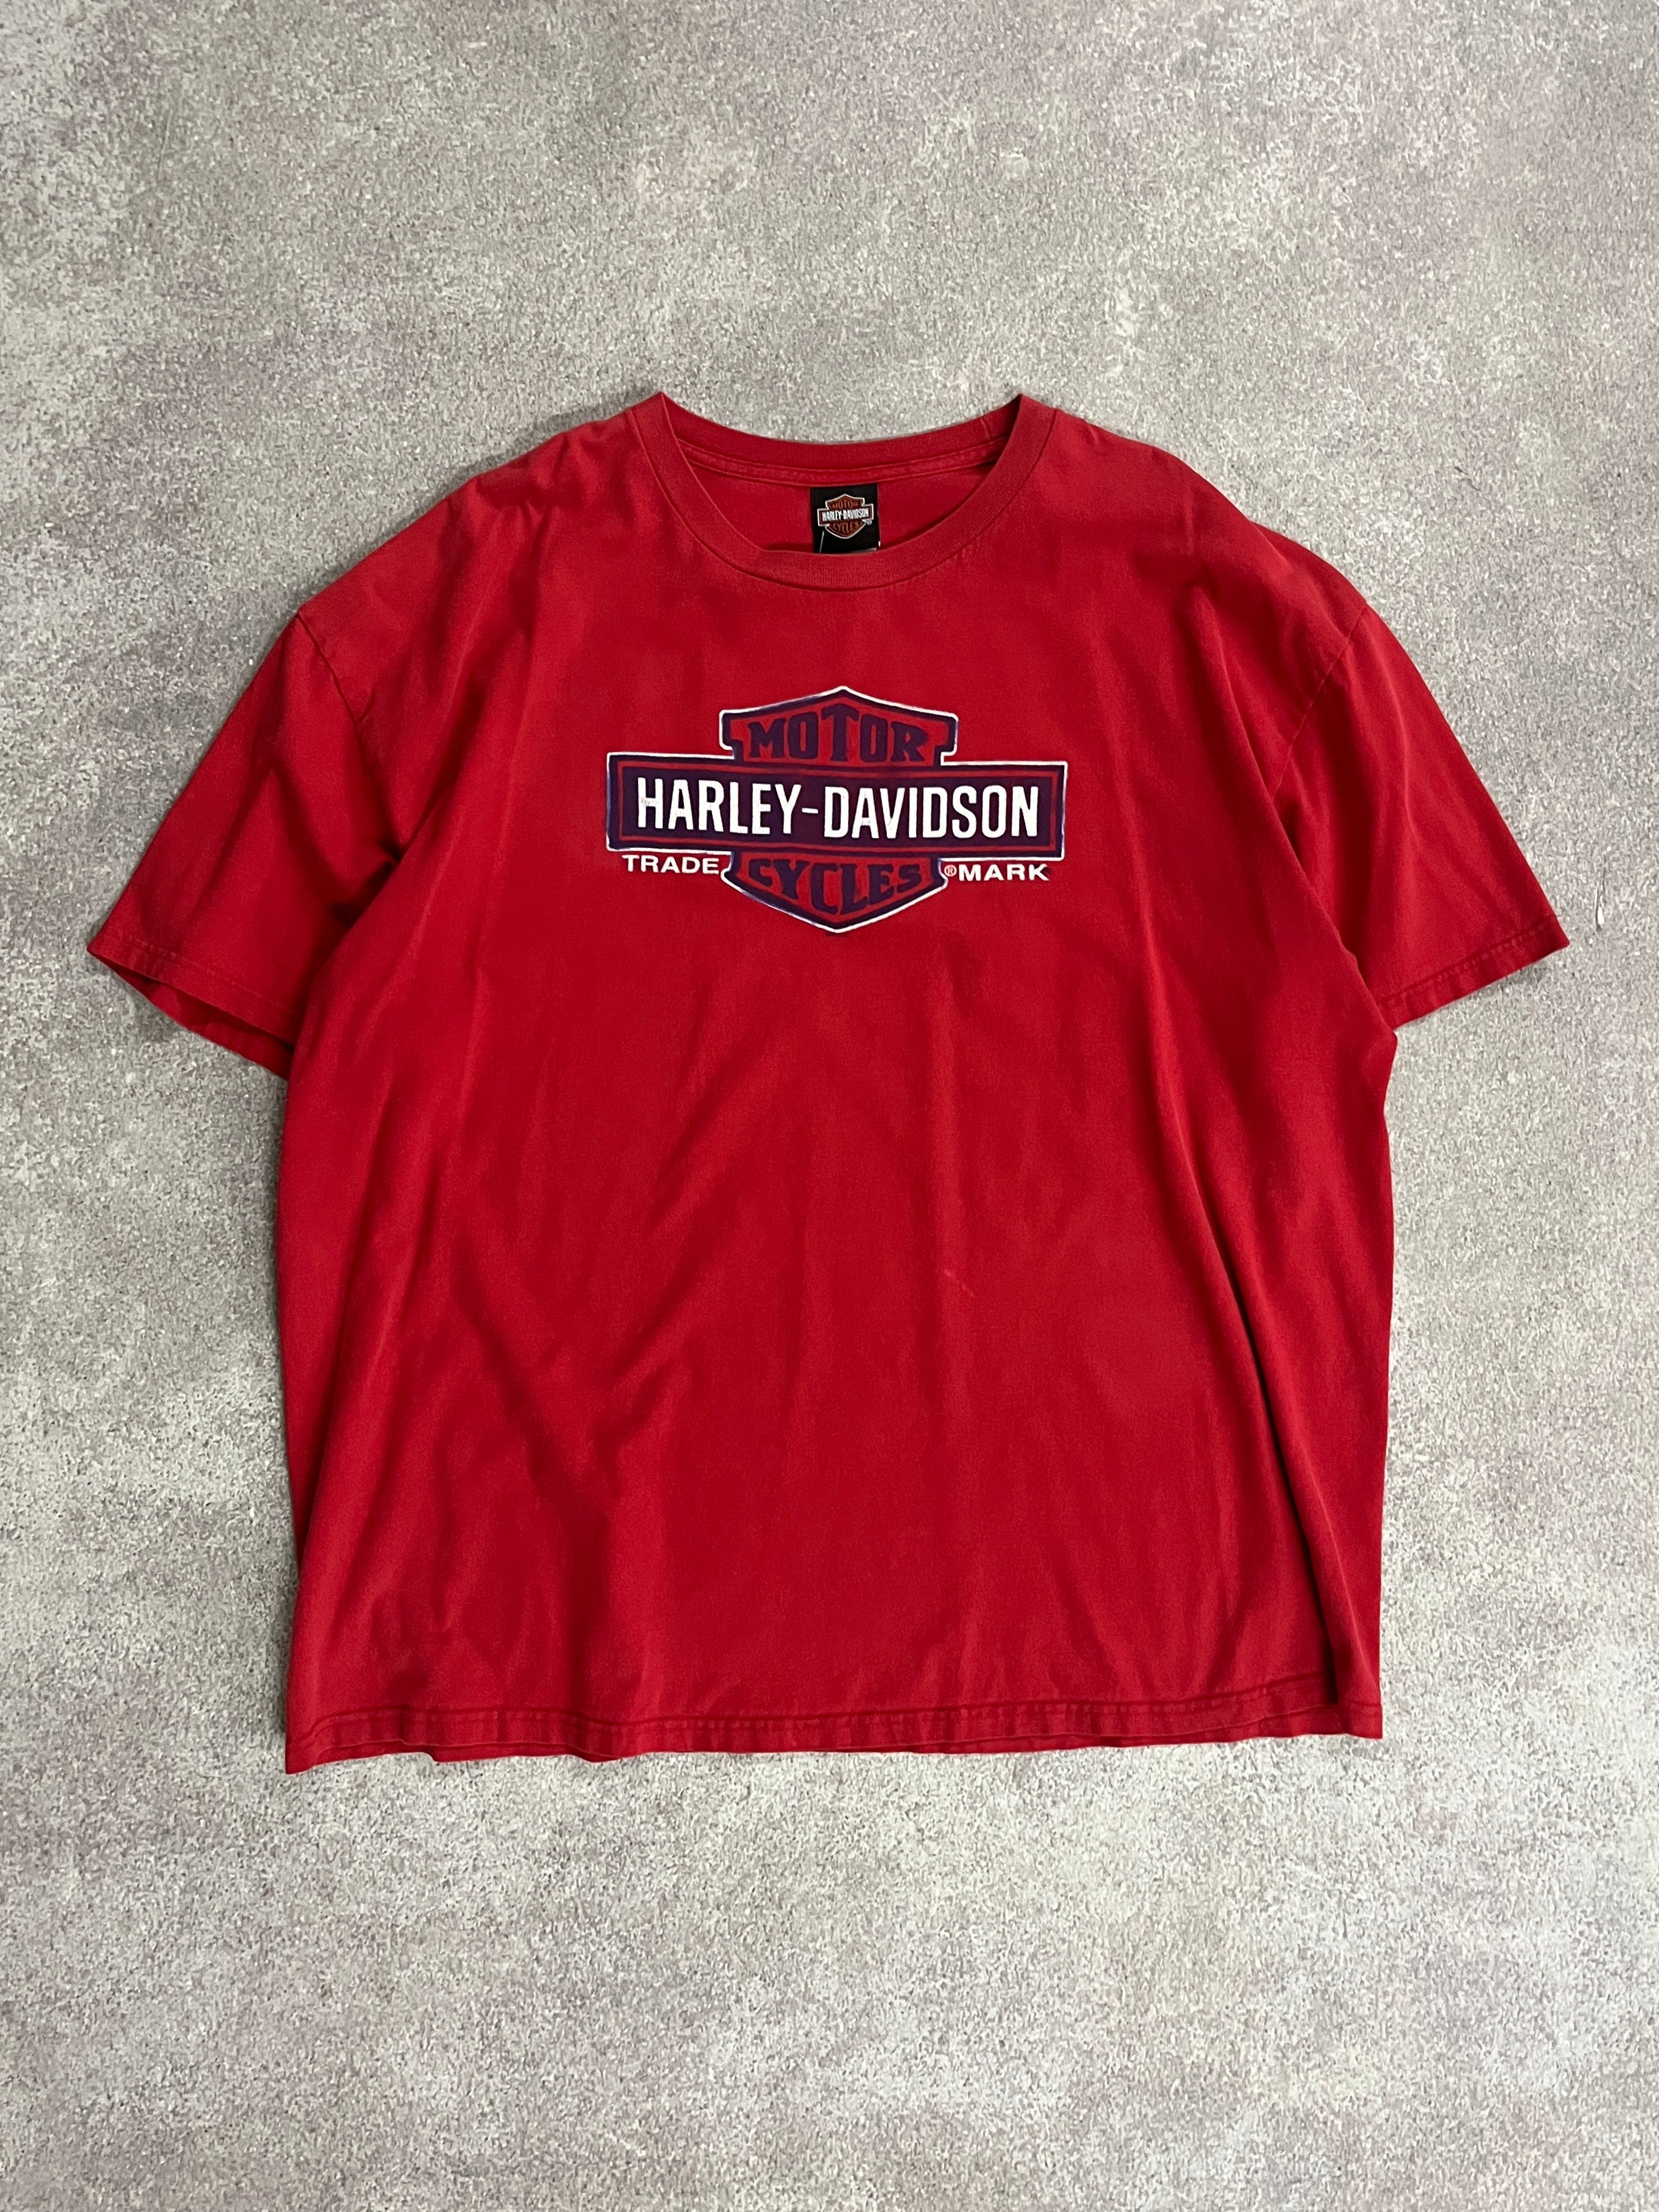 Vintage Harley Davidson T Shirt Red // X-Large - RHAGHOUSE VINTAGE